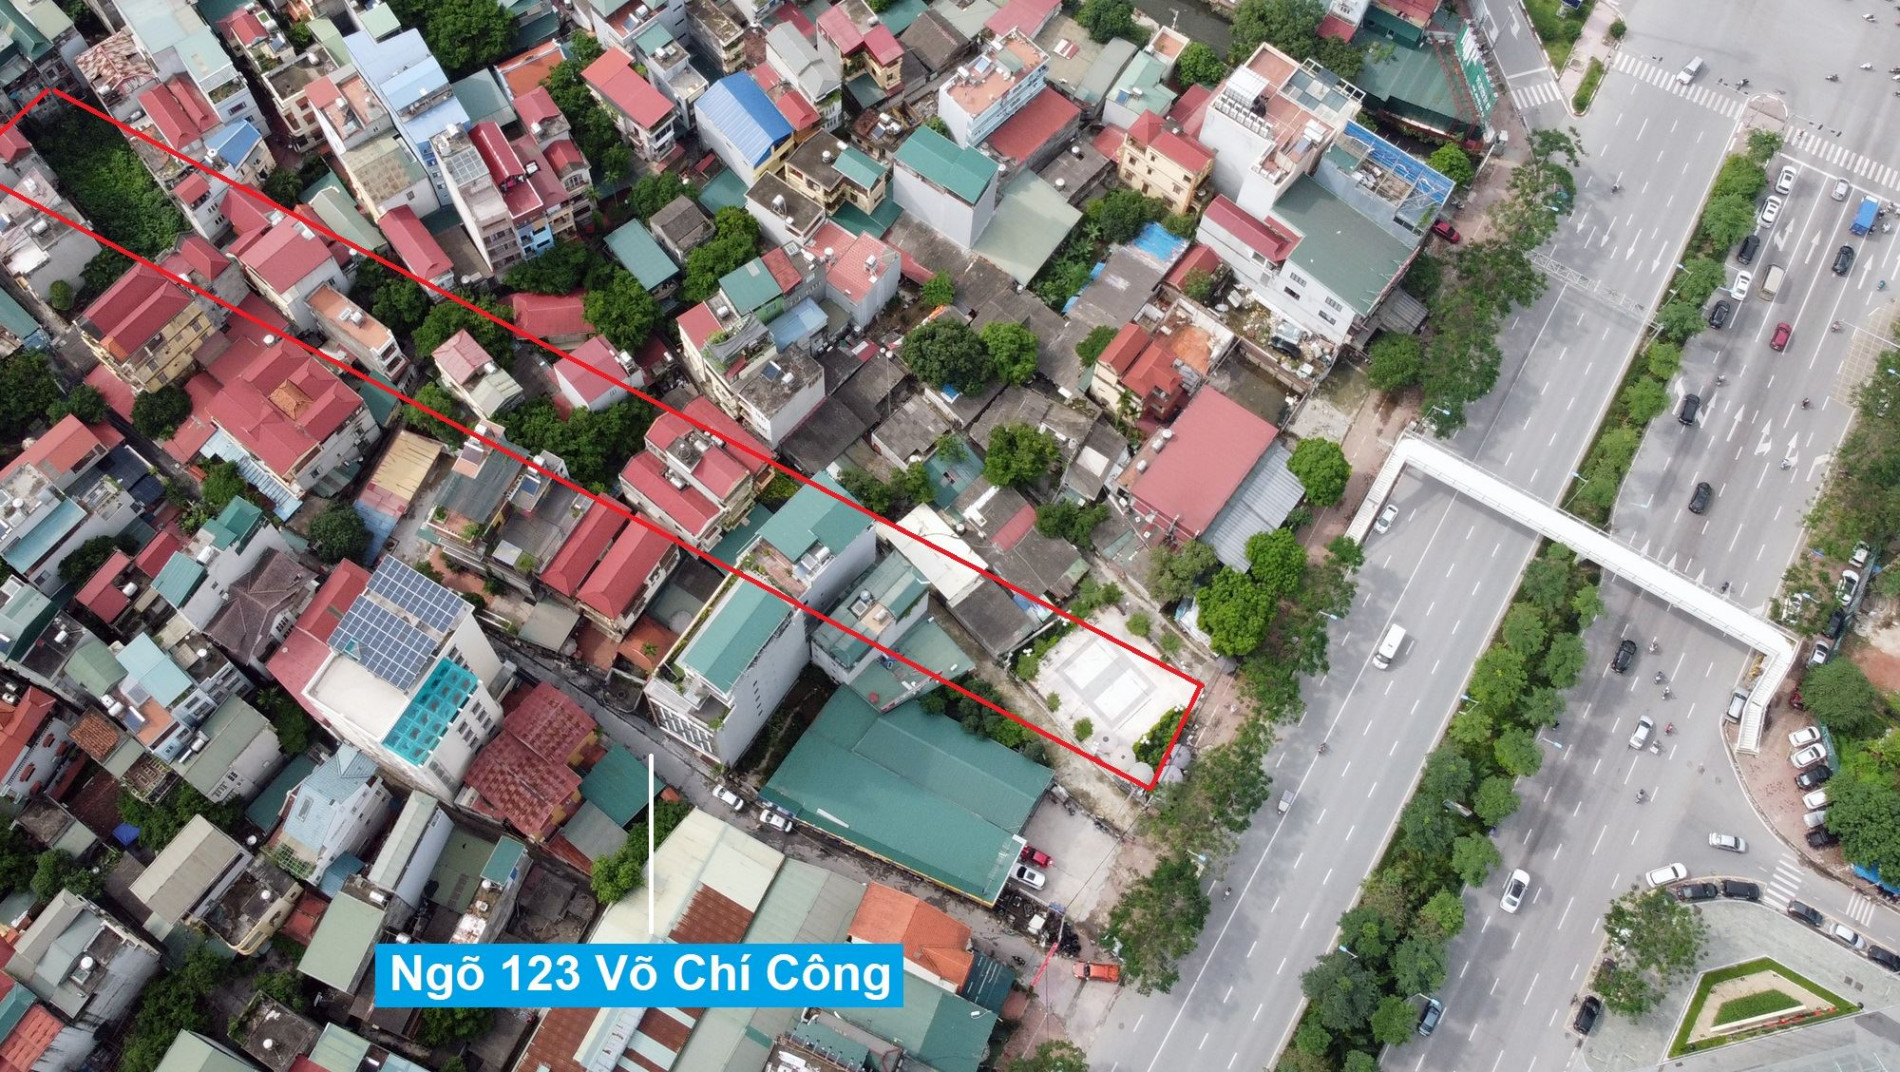 Đường sẽ mở theo quy hoạch ở phường Xuân La, Tây Hồ, Hà Nội (phần 2)